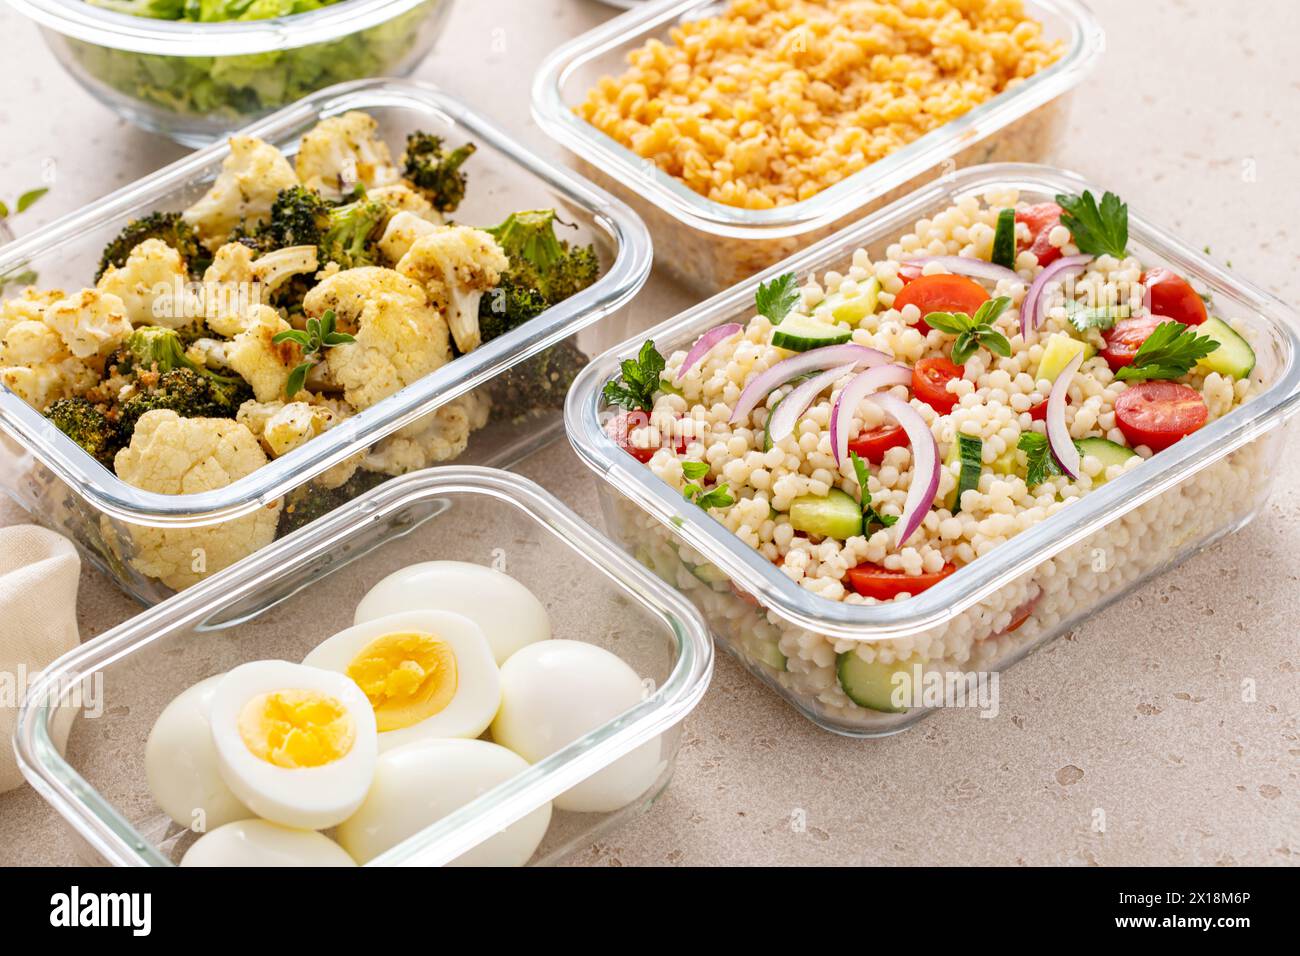 Préparation de repas végétariens sains avec œufs durs, légumes rôtis, lentilles cuites, salade de couscous et noix mélangées Banque D'Images